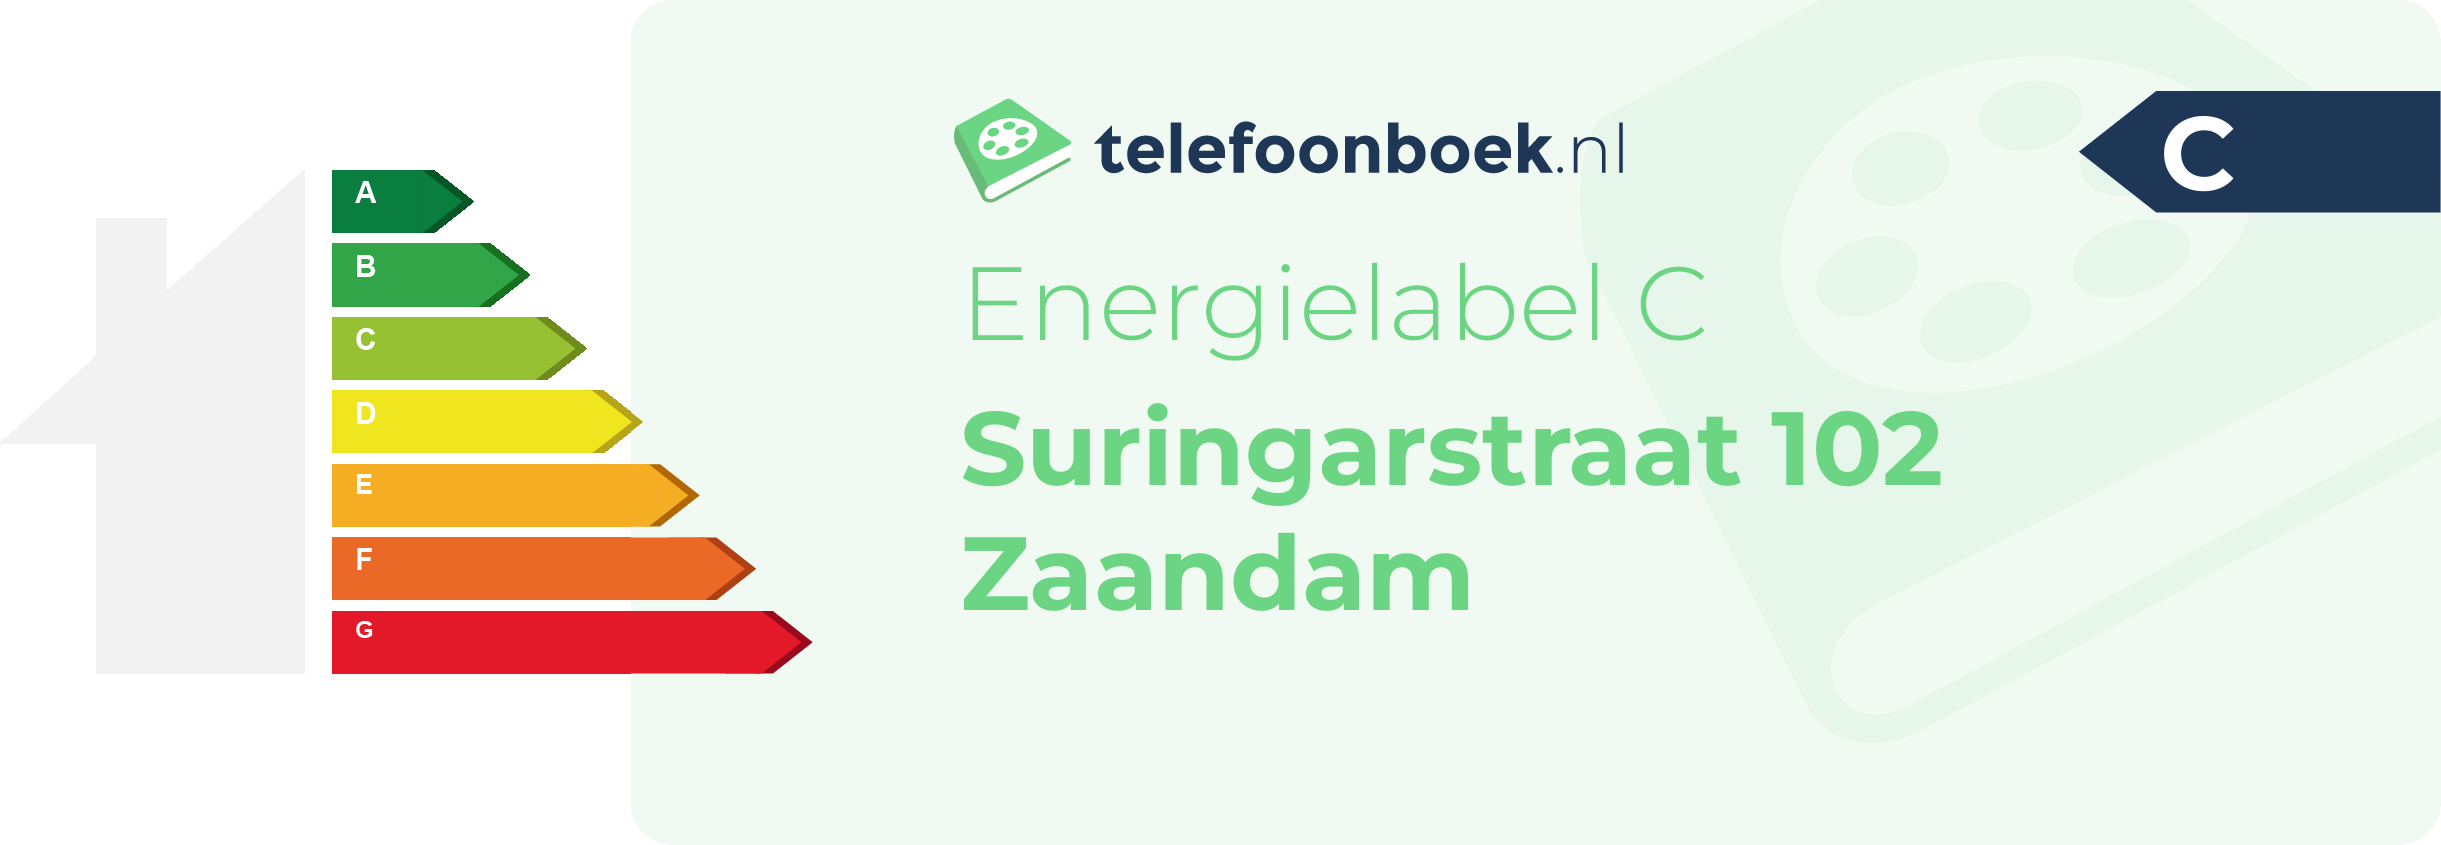 Energielabel Suringarstraat 102 Zaandam